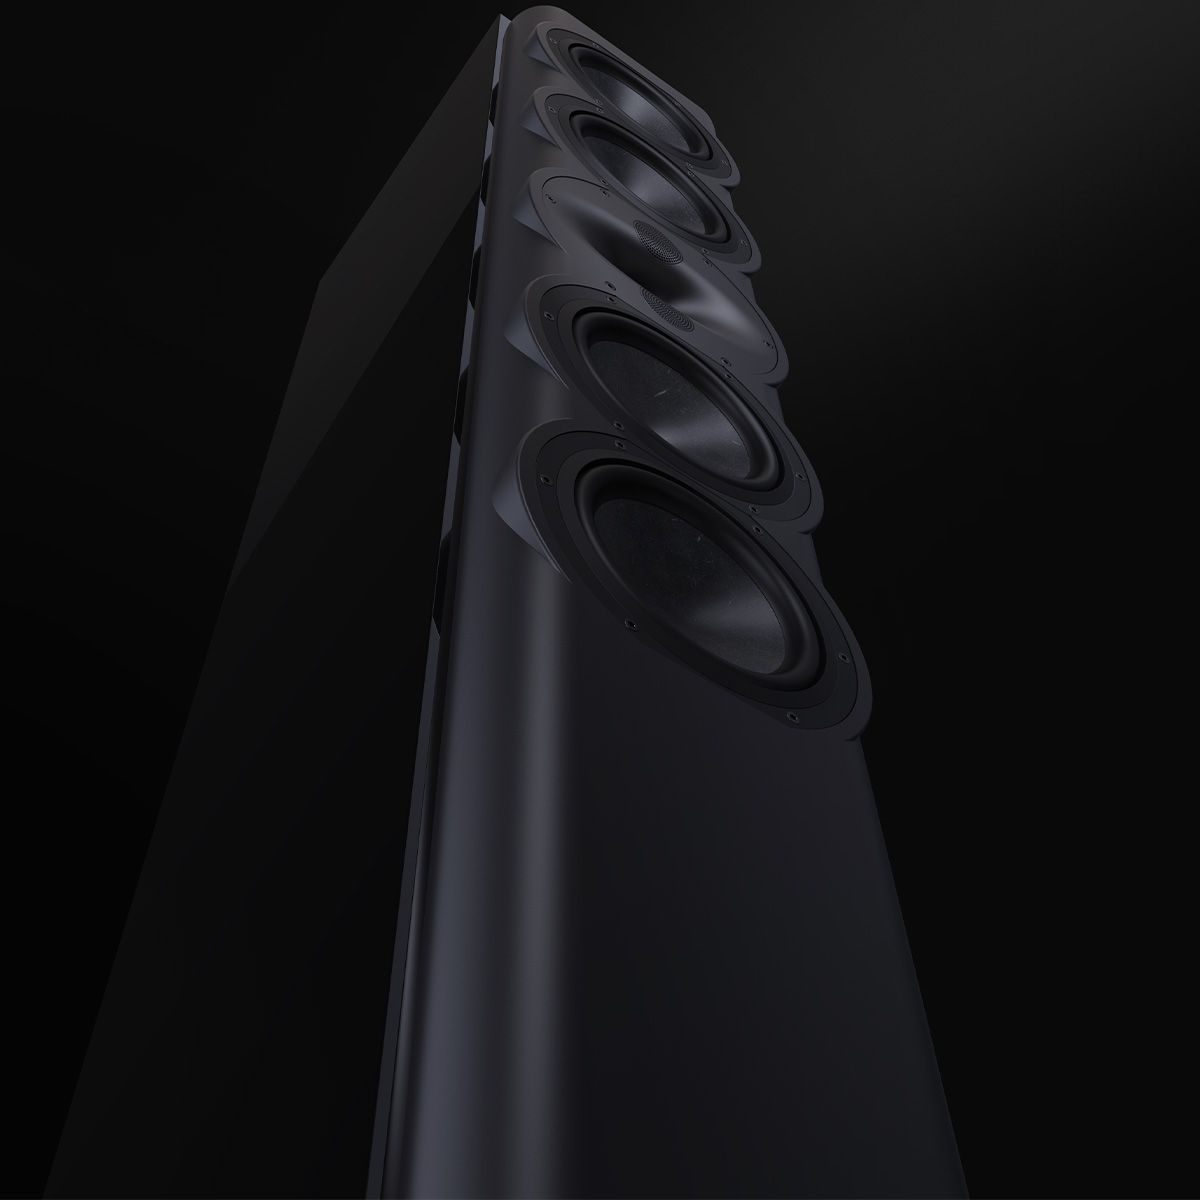 Perlisten R7t Floorstanding Speaker Bottom To Top View In Black - Cinematic